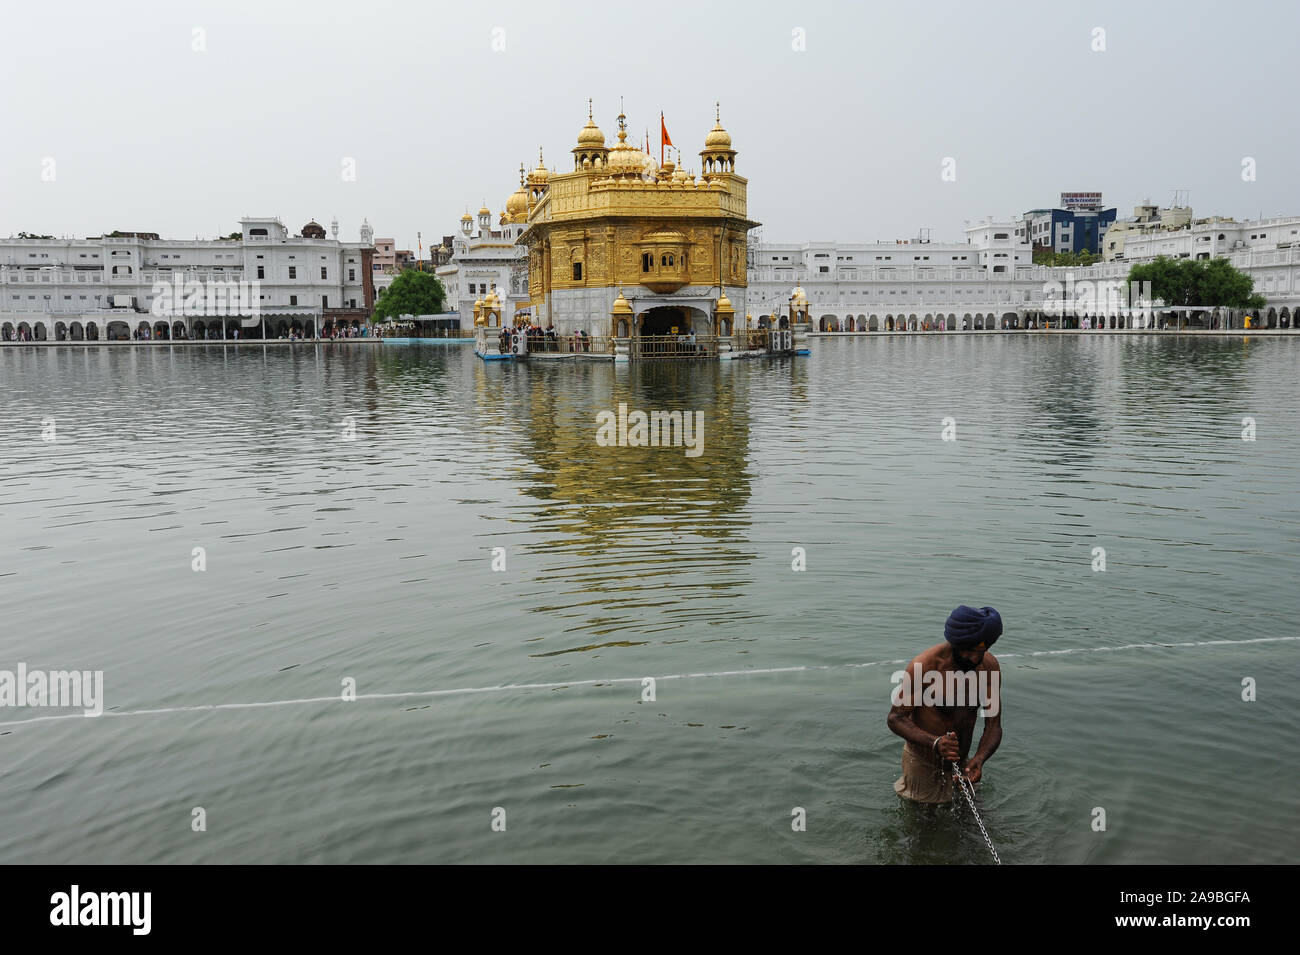 22.07.2011, Amritsar, Punjab, India - un croyant se baigne dans la sainte sikhe du bassin de l'eau (l'Amrit) Sarover du Temple d'Or, le plus grand sanctuaire de t Banque D'Images